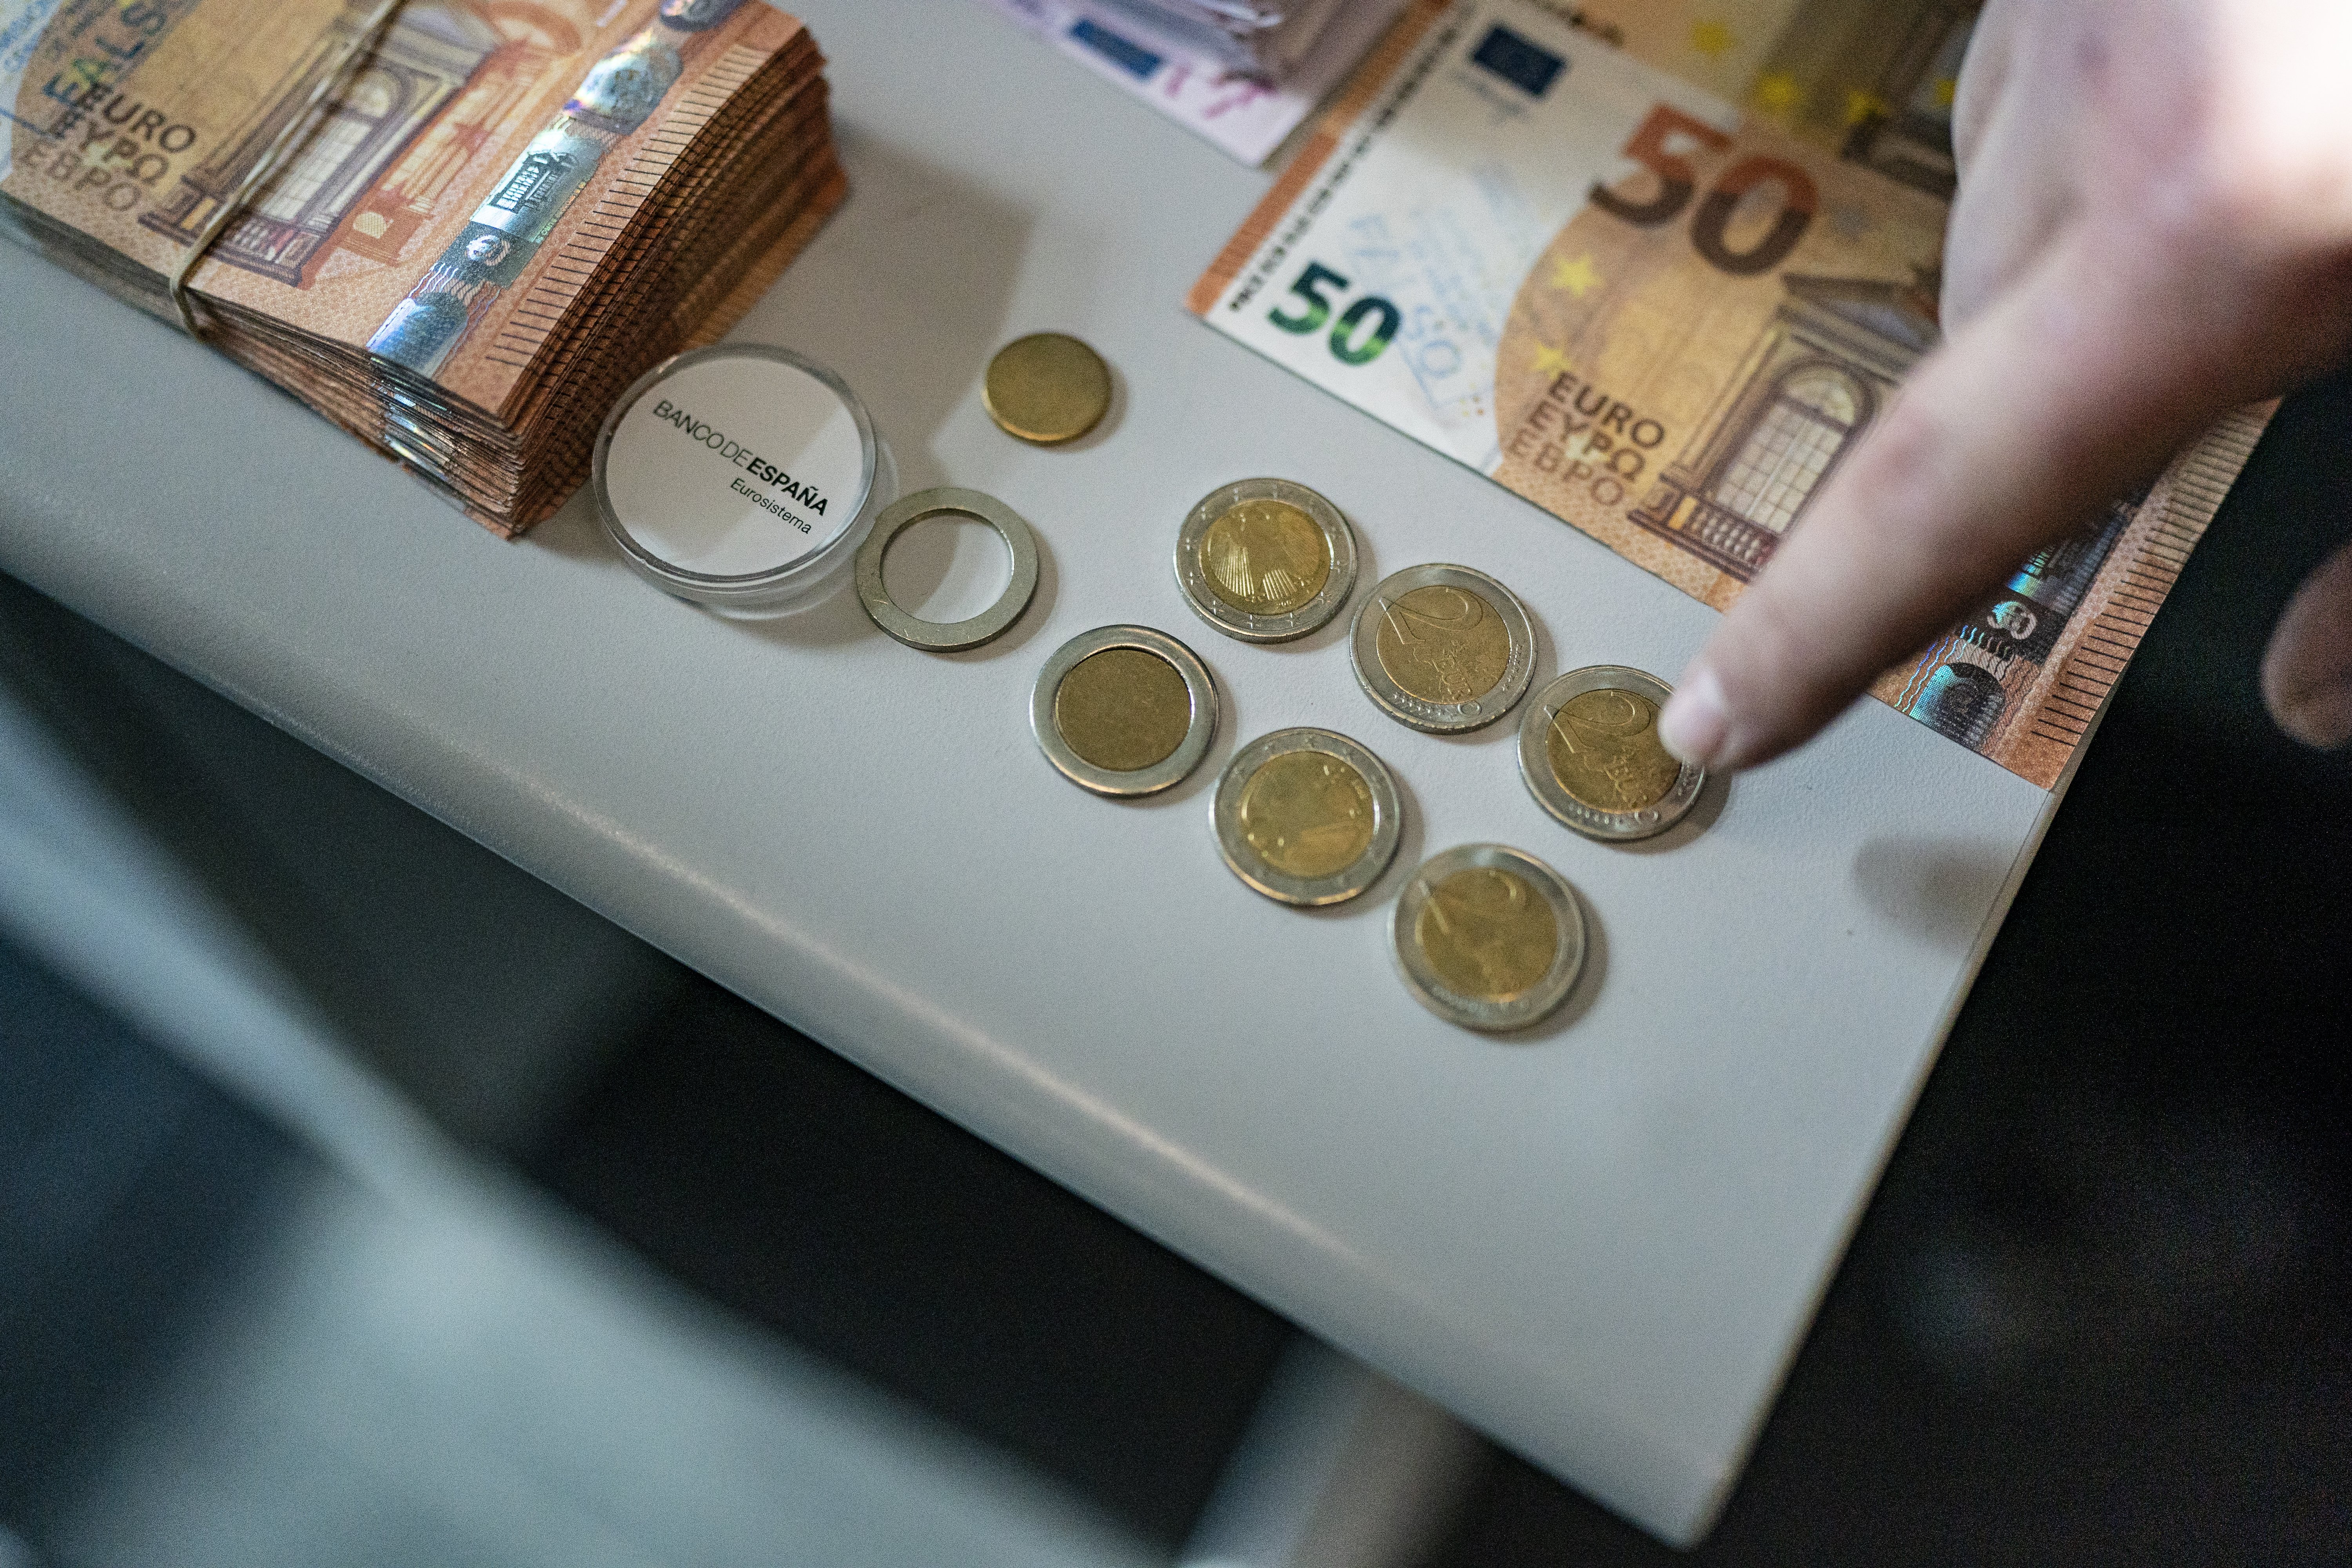 Falsificación de monedas y billetes mossos d'esquadra - JOAN MATEU PARRA 